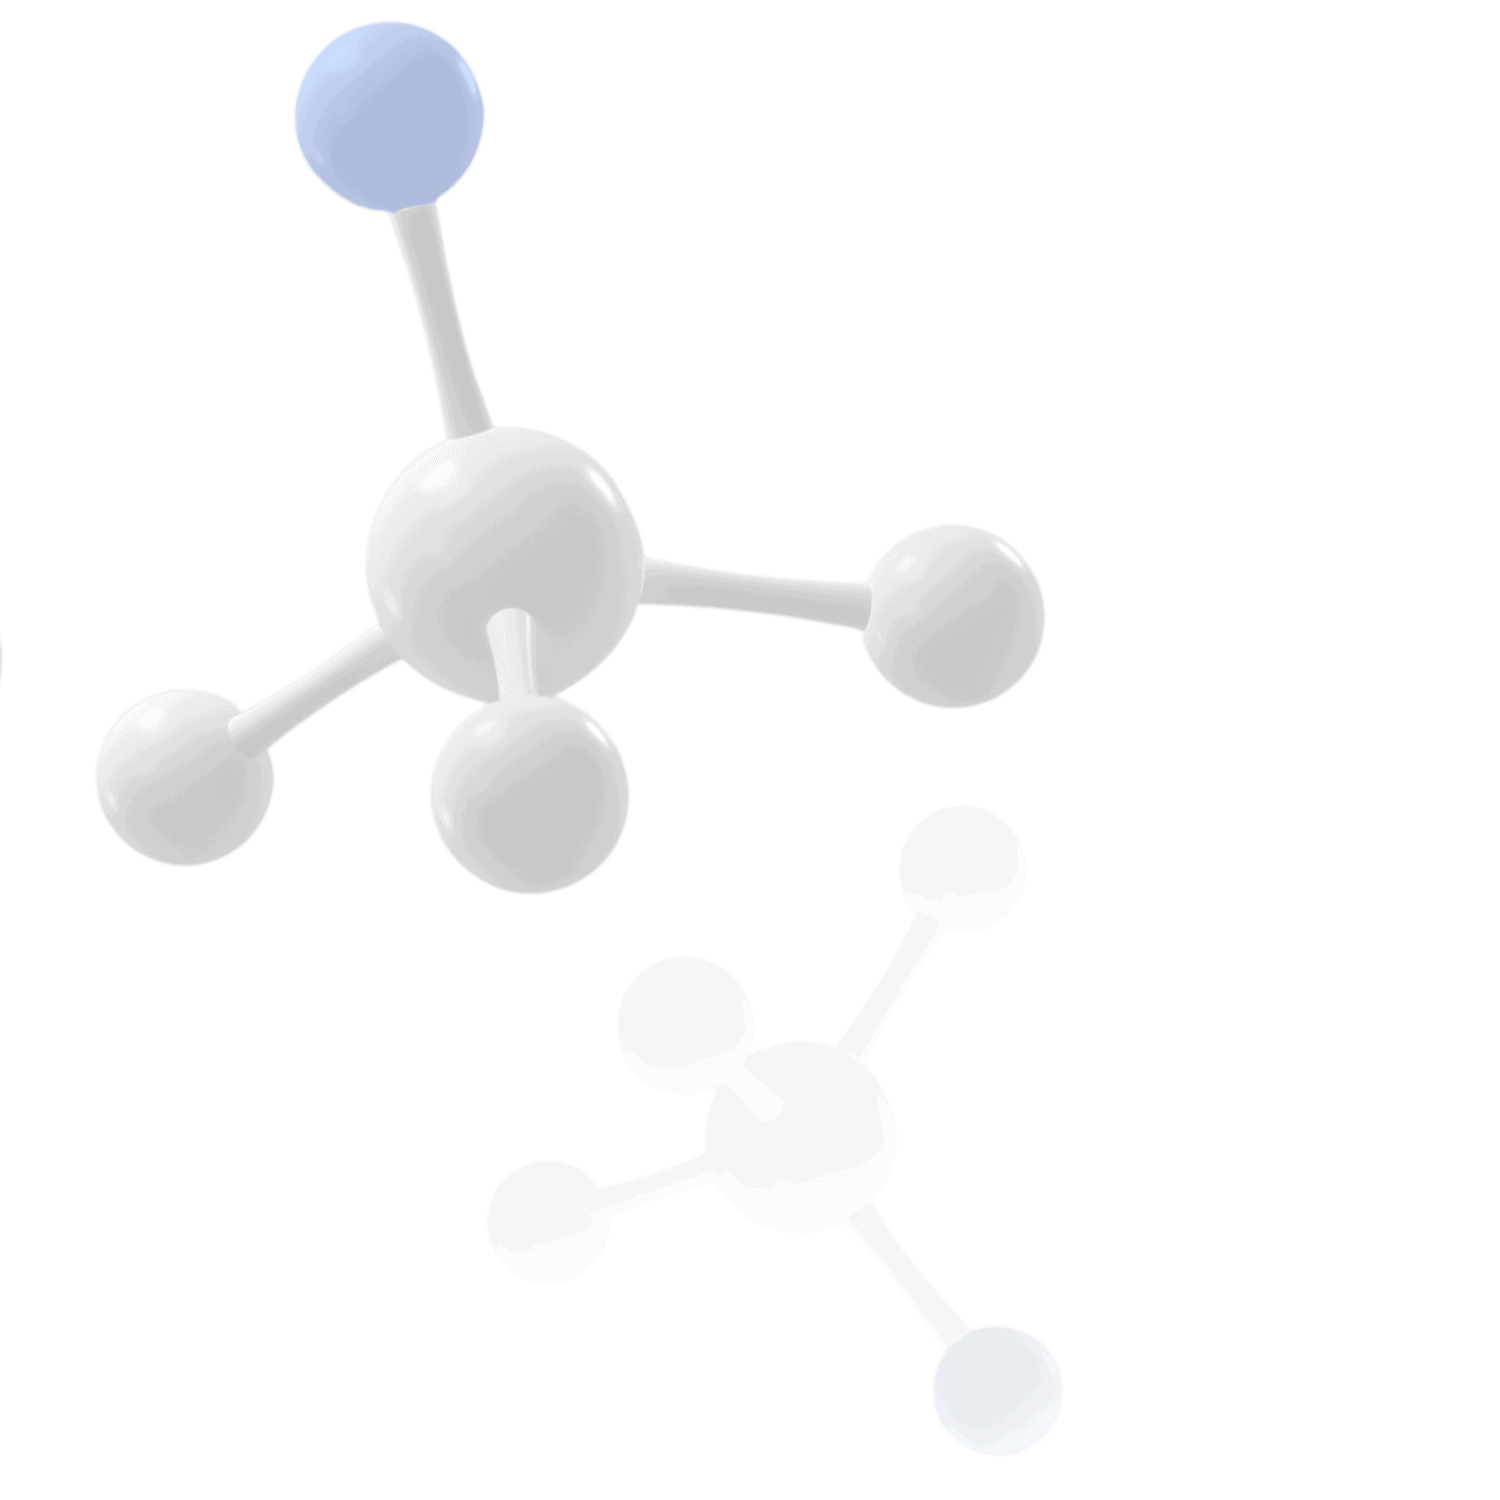 1 molecule